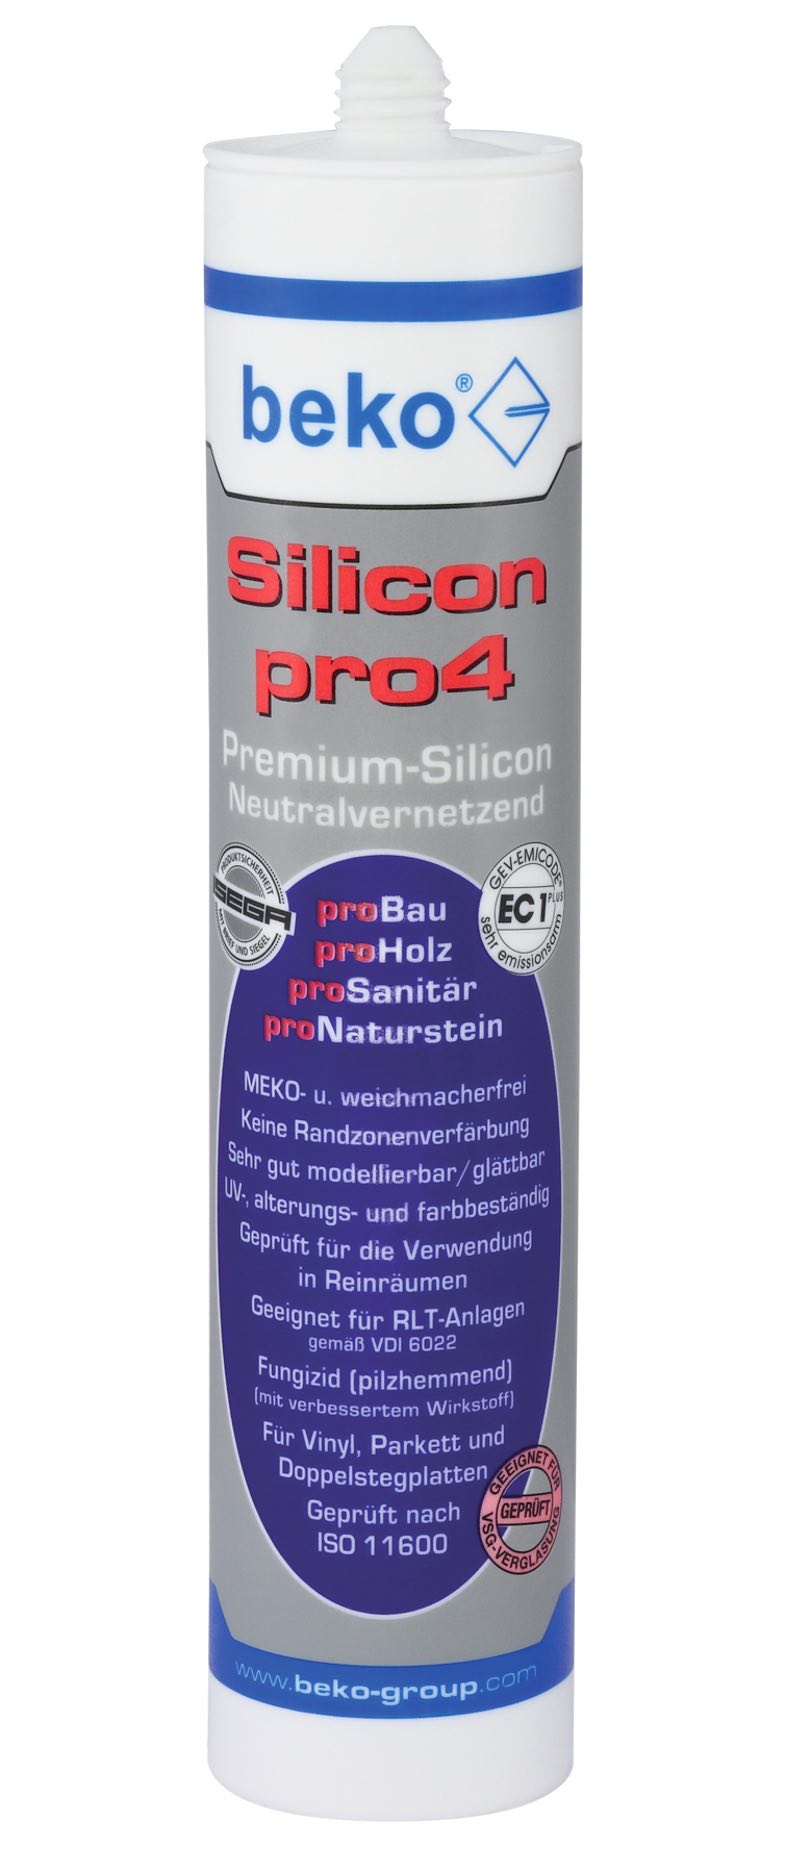 Silicon transparent pro4 - Neutralvernetzendes Premium-Silicon